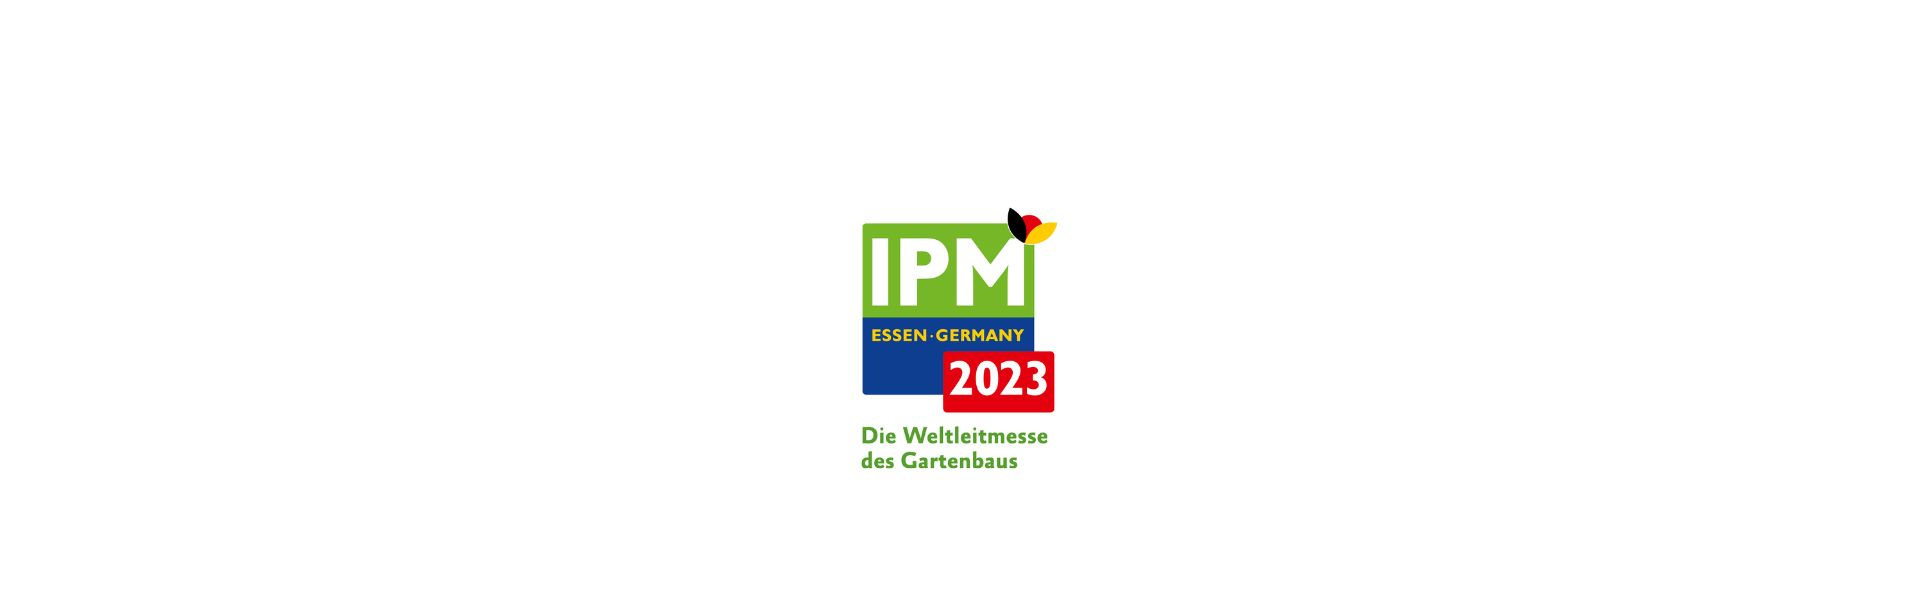 IPM Essen 2023